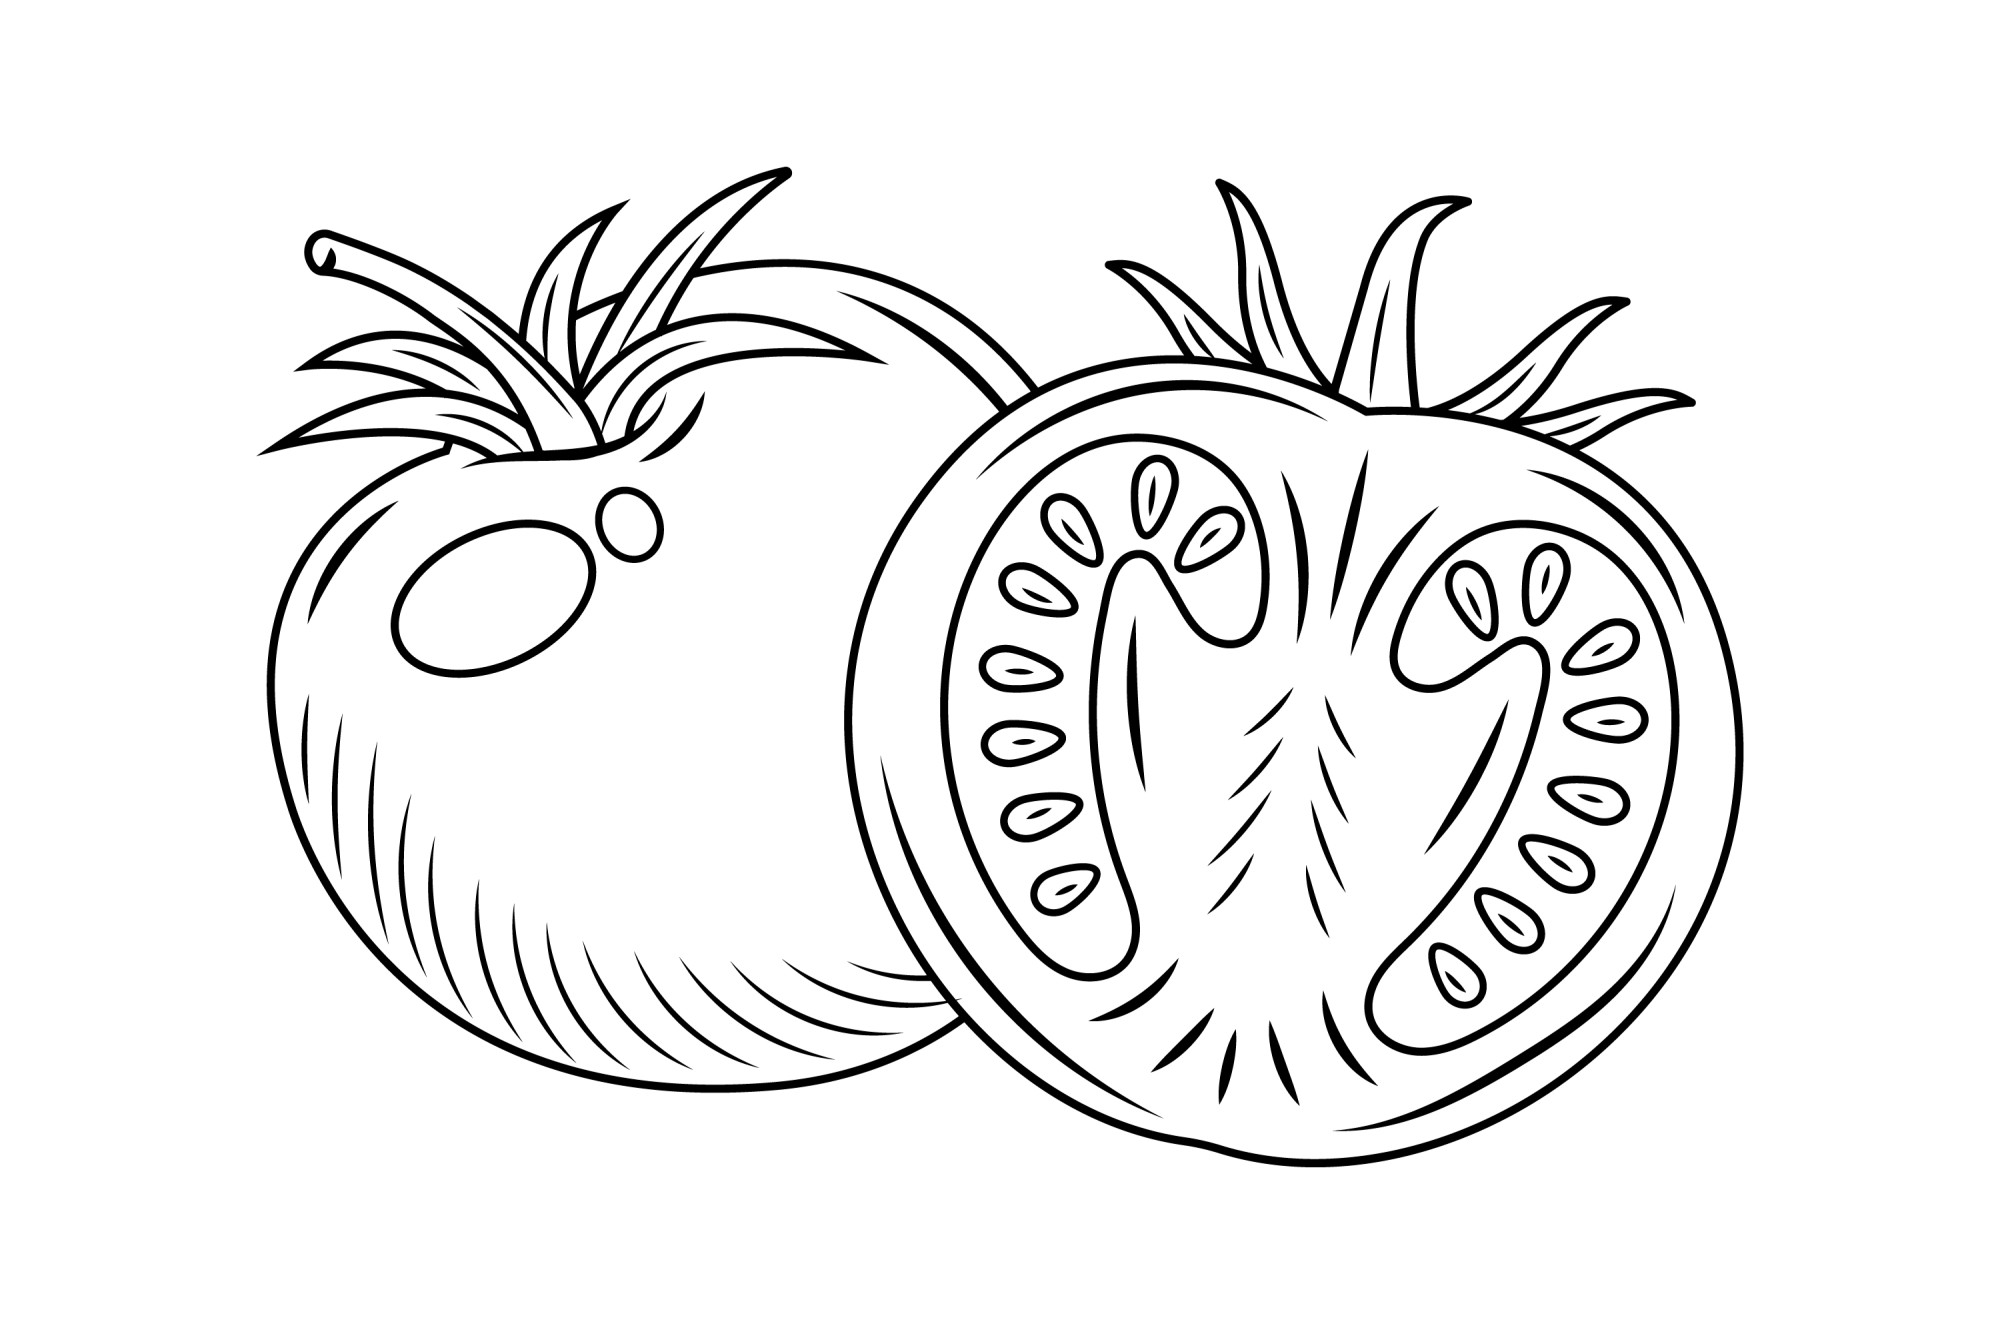 Раскраска для детей: фермерский помидор с половинкой